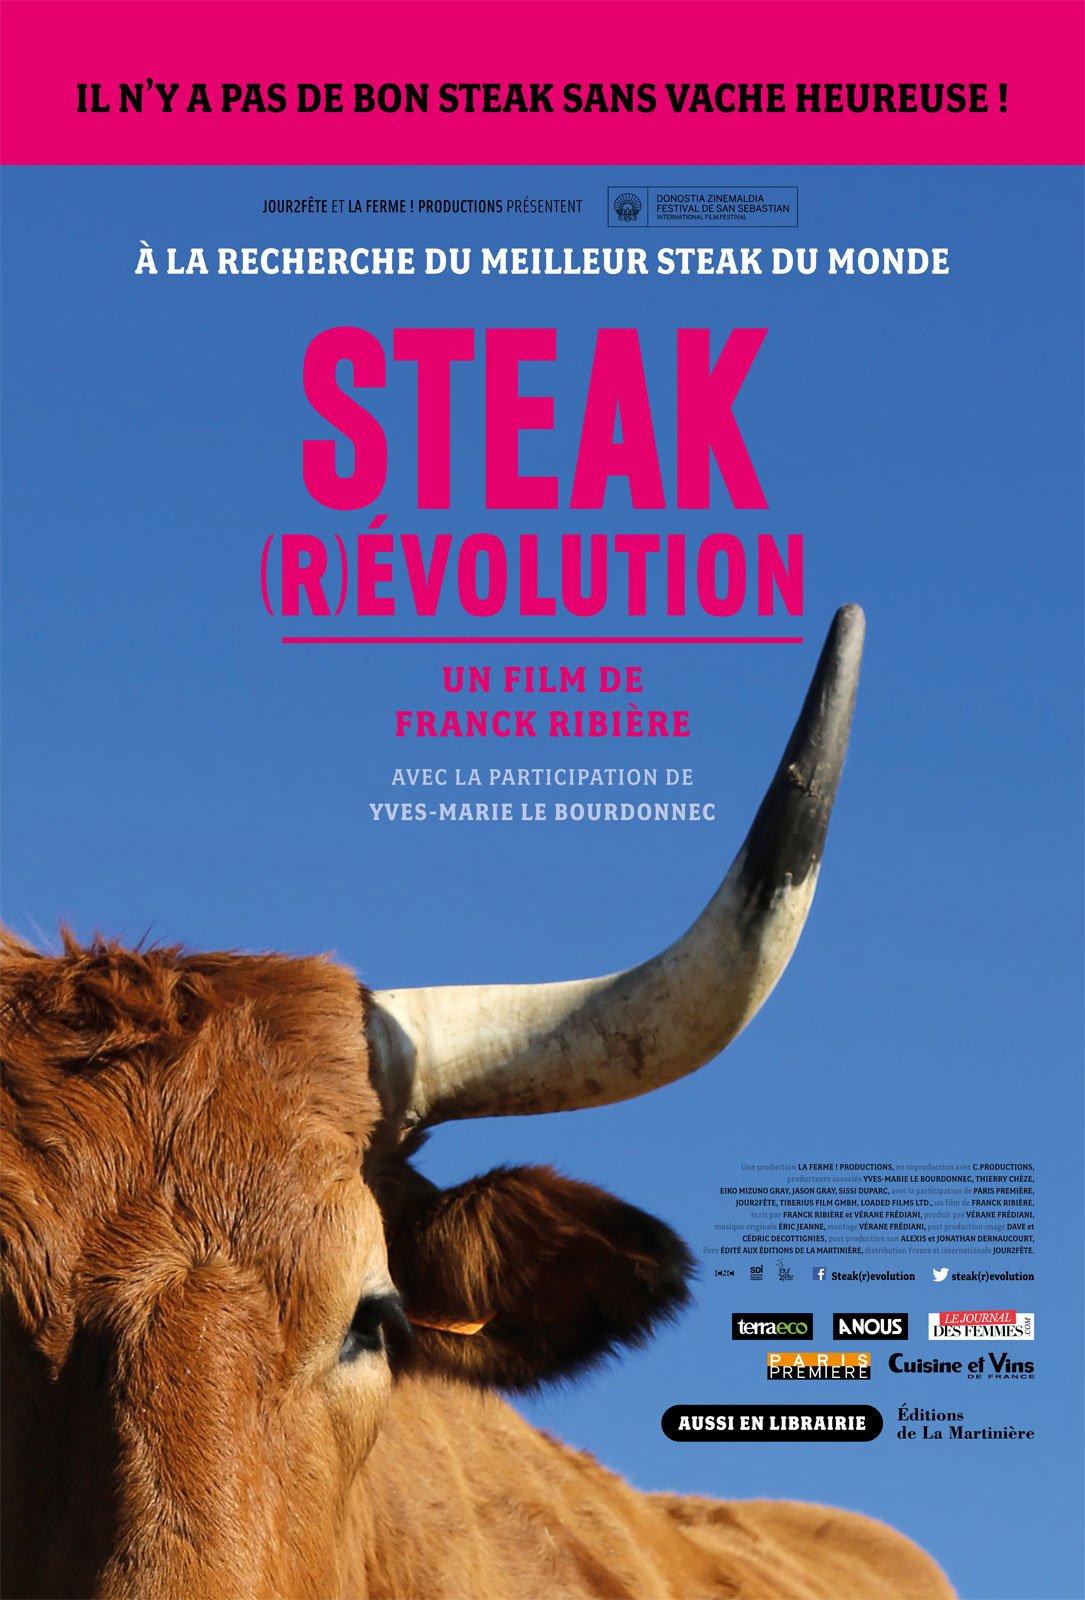 L'affiche du film Steak Révolution v.f.